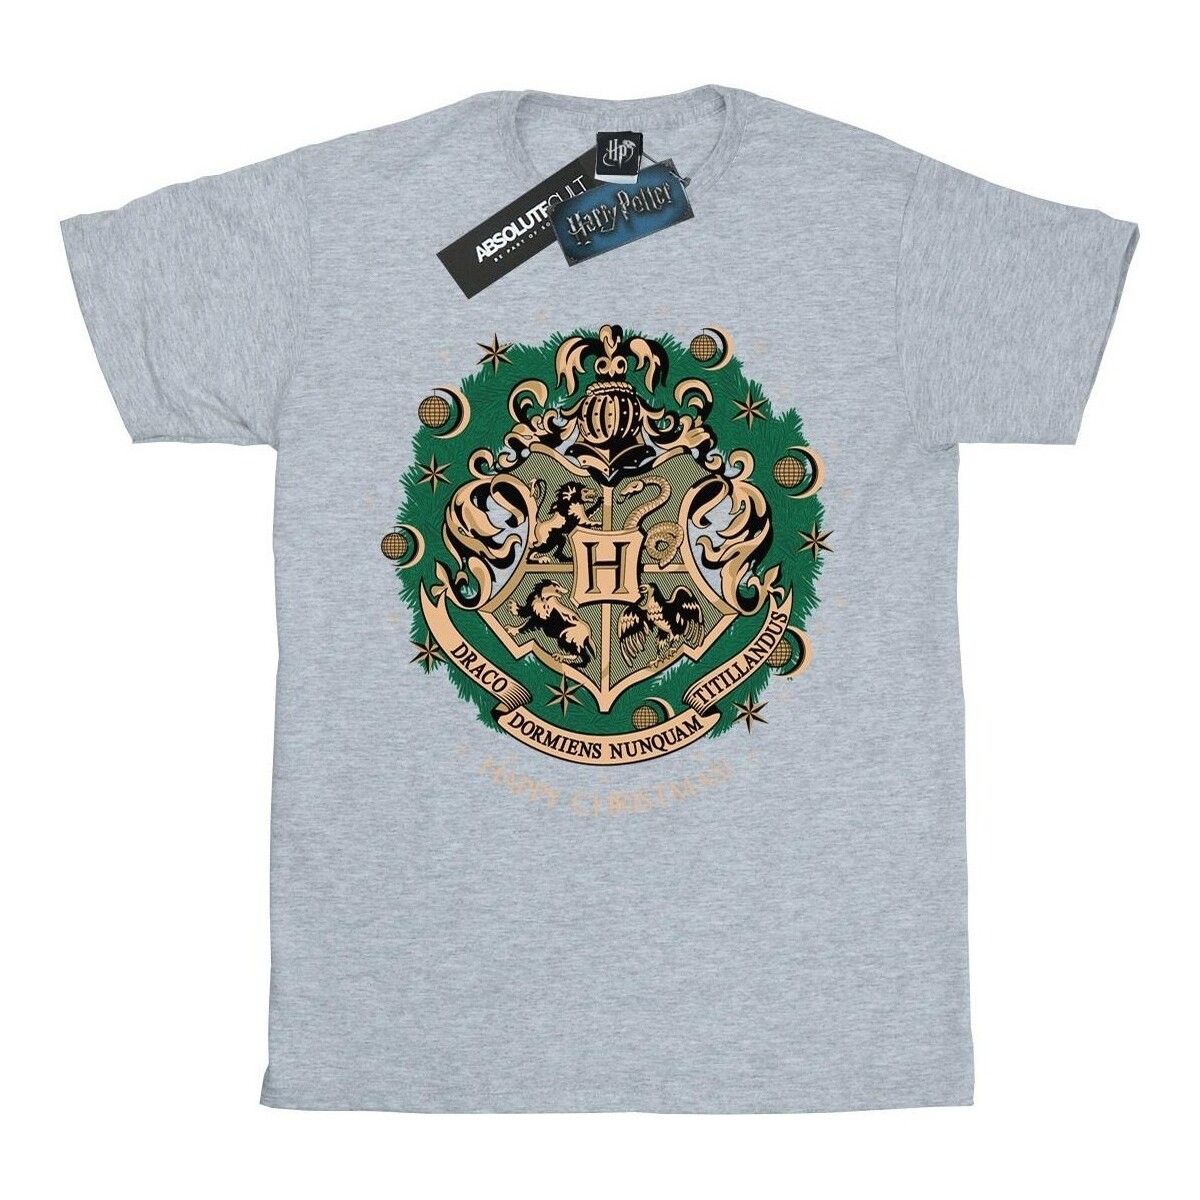 Vêtements Garçon T-shirts manches longues Harry Potter  Gris